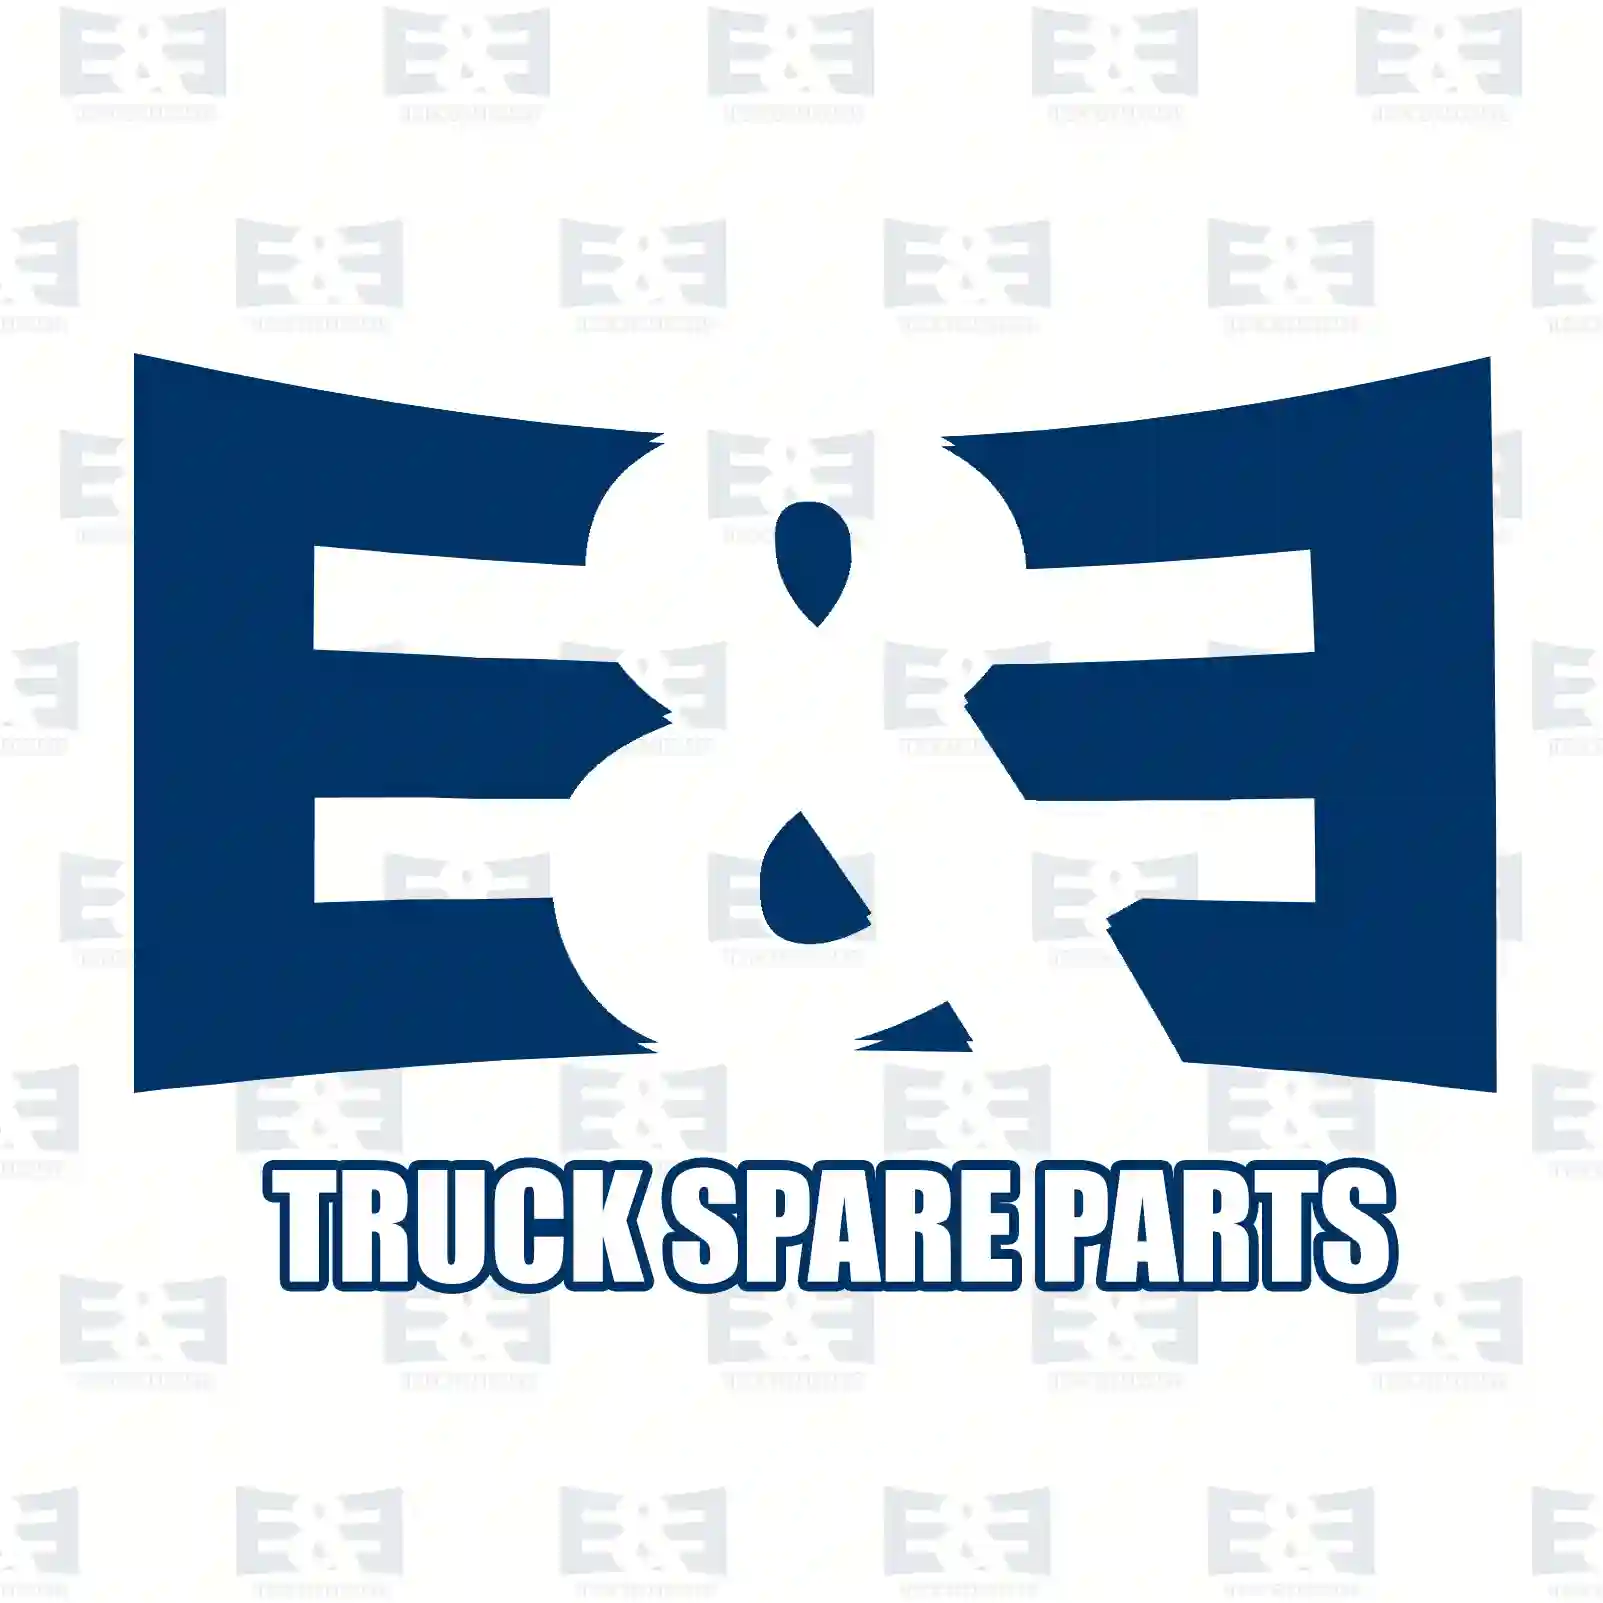 Shock absorber, 2E2283748, 81437016790, 81437026130, , , , ||  2E2283748 E&E Truck Spare Parts | Truck Spare Parts, Auotomotive Spare Parts Shock absorber, 2E2283748, 81437016790, 81437026130, , , , ||  2E2283748 E&E Truck Spare Parts | Truck Spare Parts, Auotomotive Spare Parts